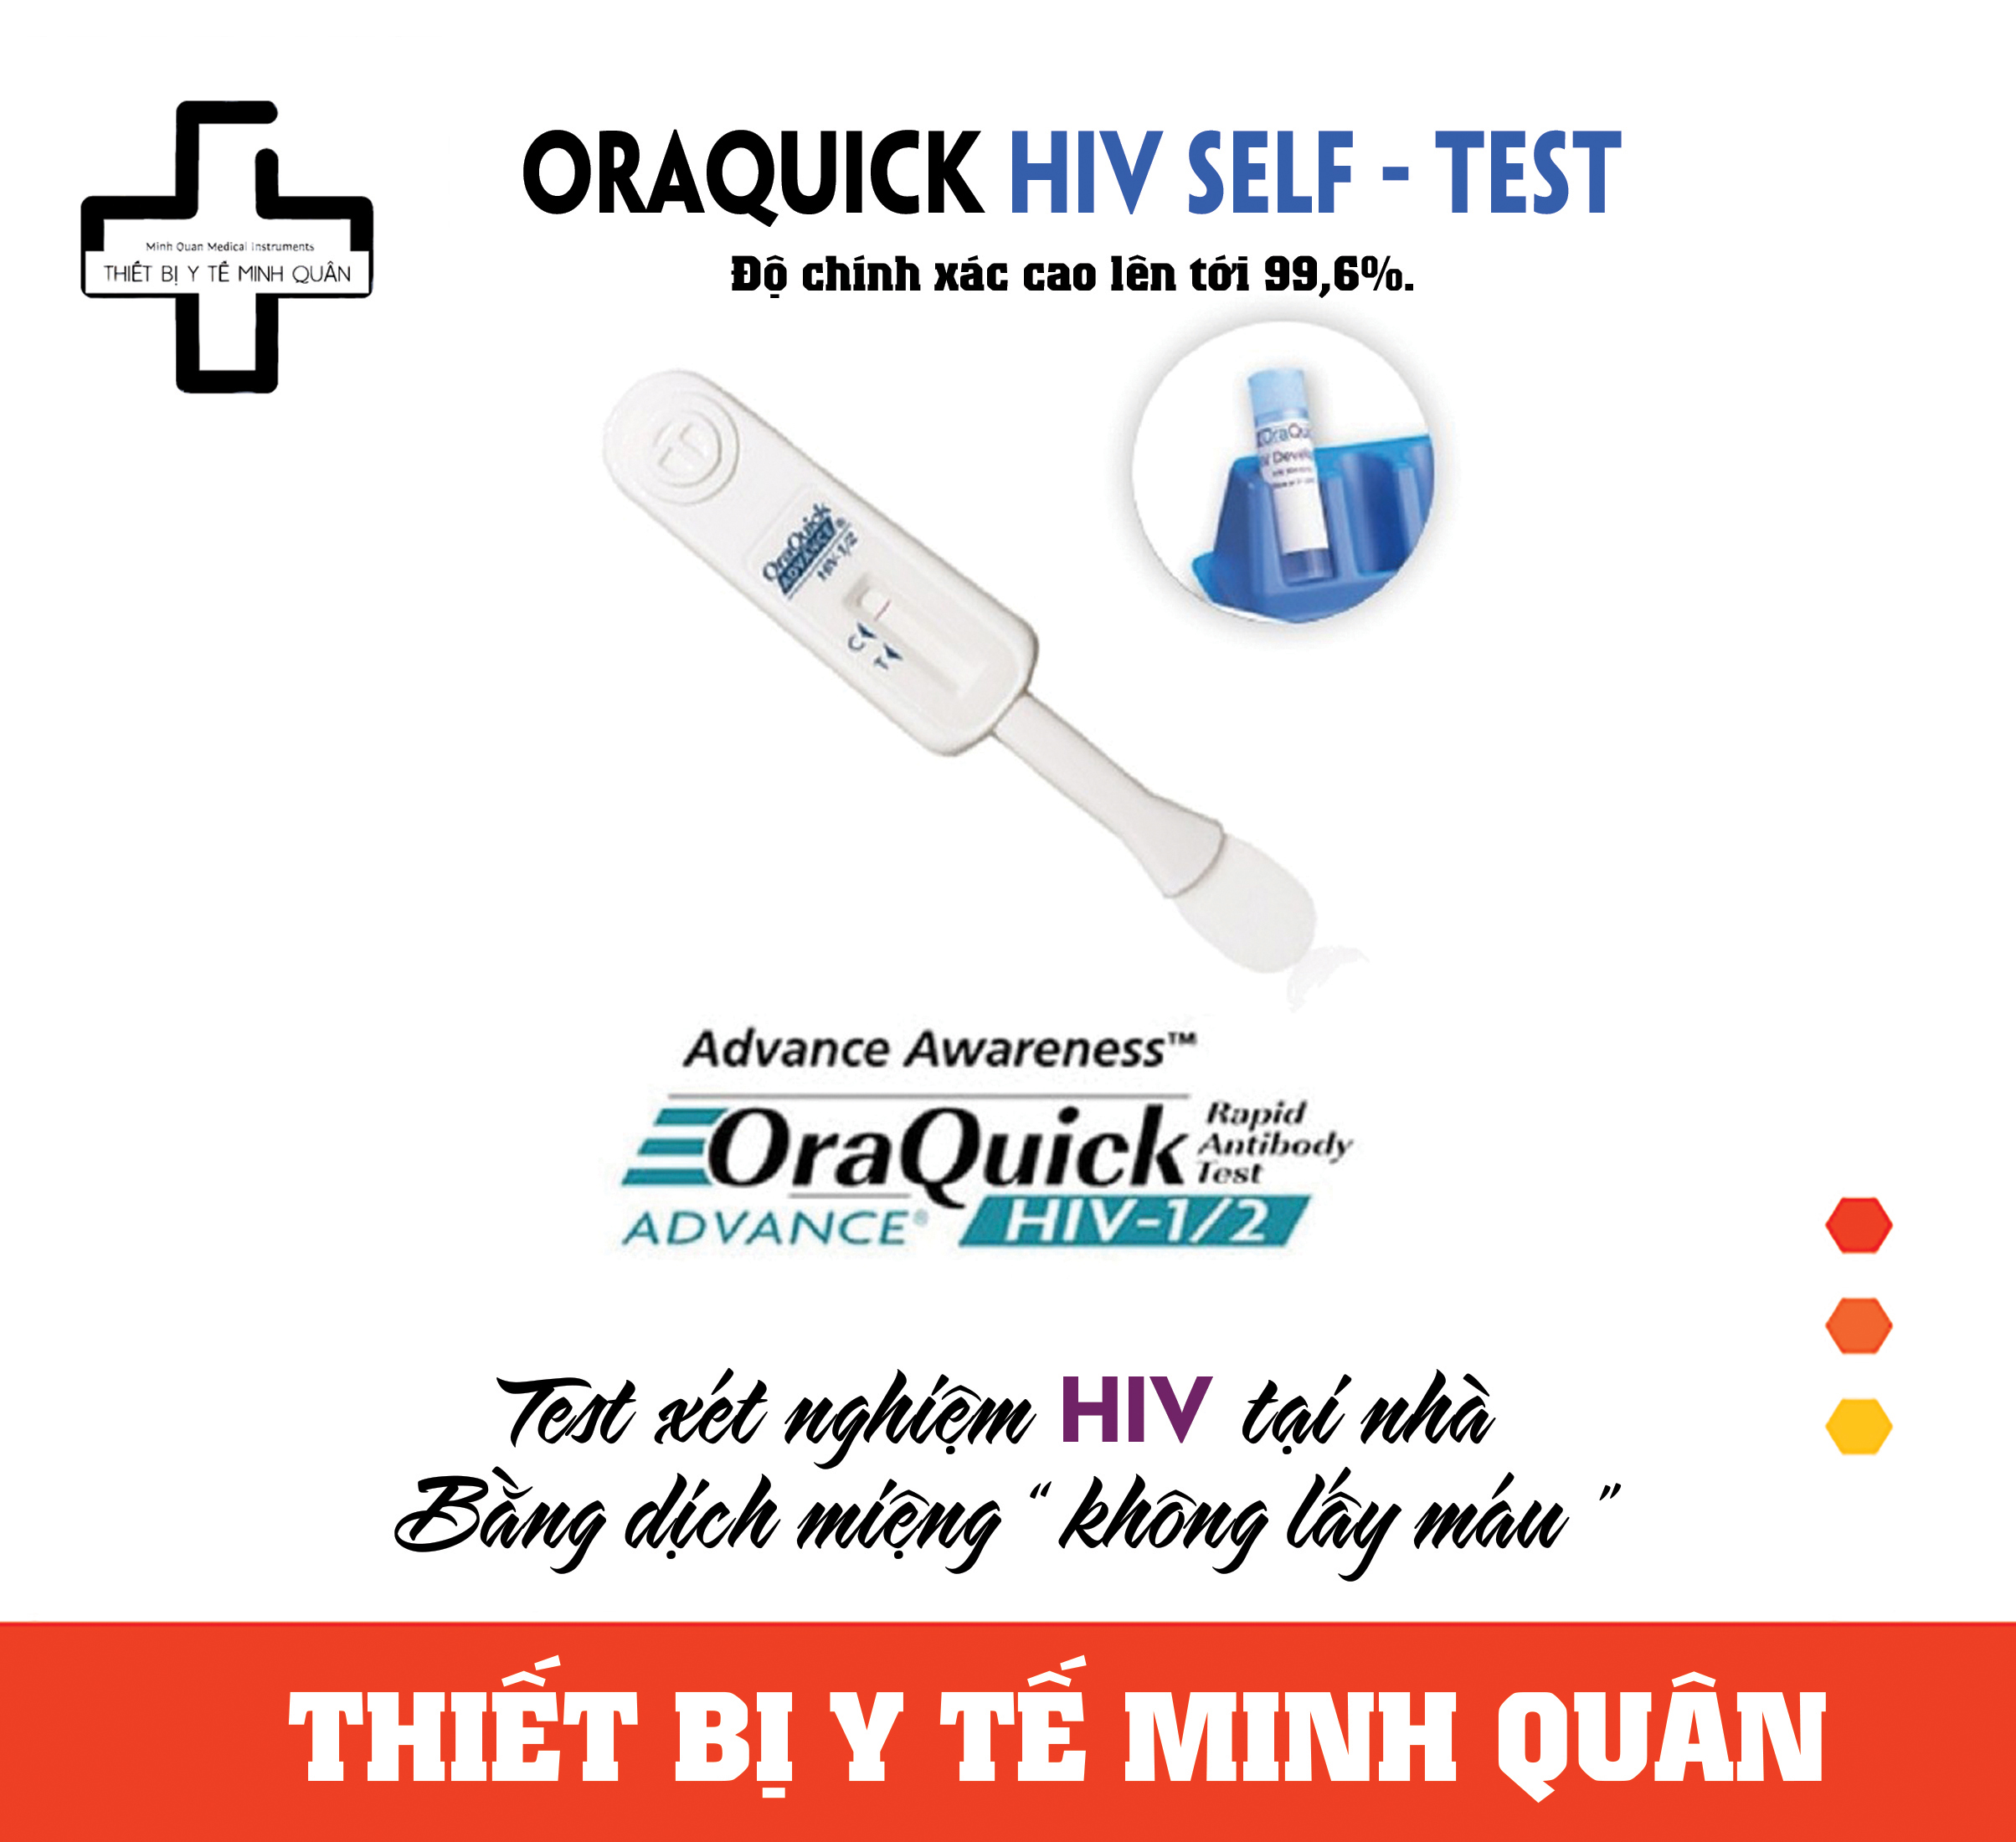 Que Test HIV tại nhà ORAQUICK  xét nghiệm bằng dịch miệng